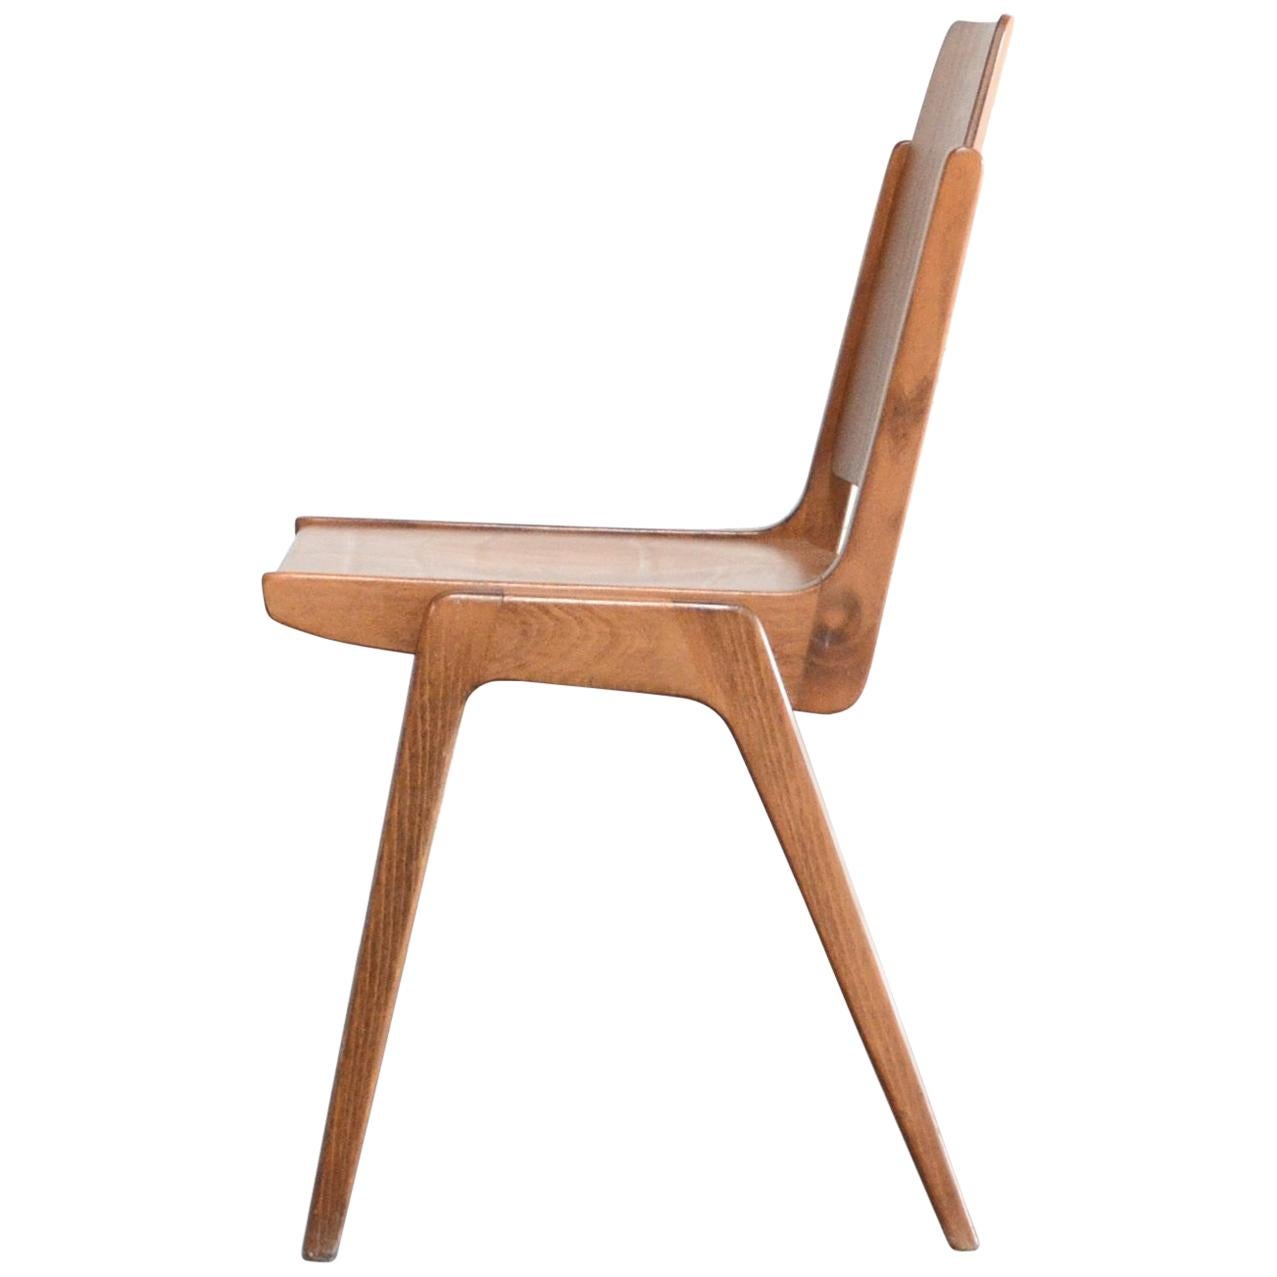 Diese Austro-Stühle wurden 1959 vom österreichischen Architekten Franz Schuster entworfen und von Wiesner-Hager produziert.
Der Stuhl wird auch als 